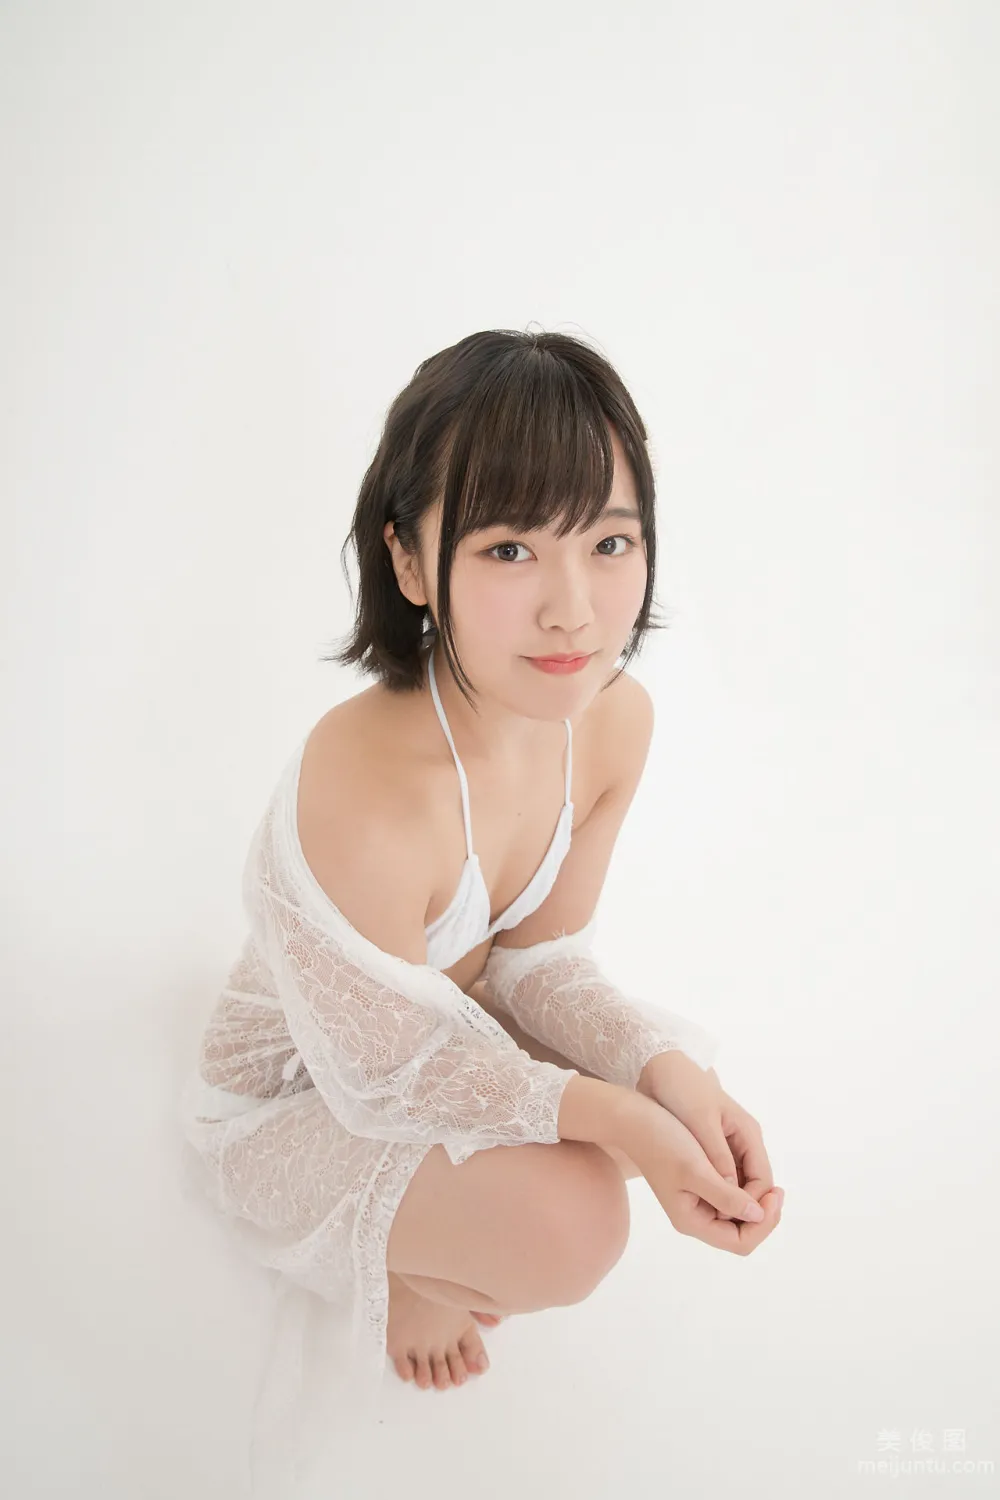 [Minisuka.tv] Anju Kouzuki 香月りお - Secret Gallery (STAGE2) 13.313